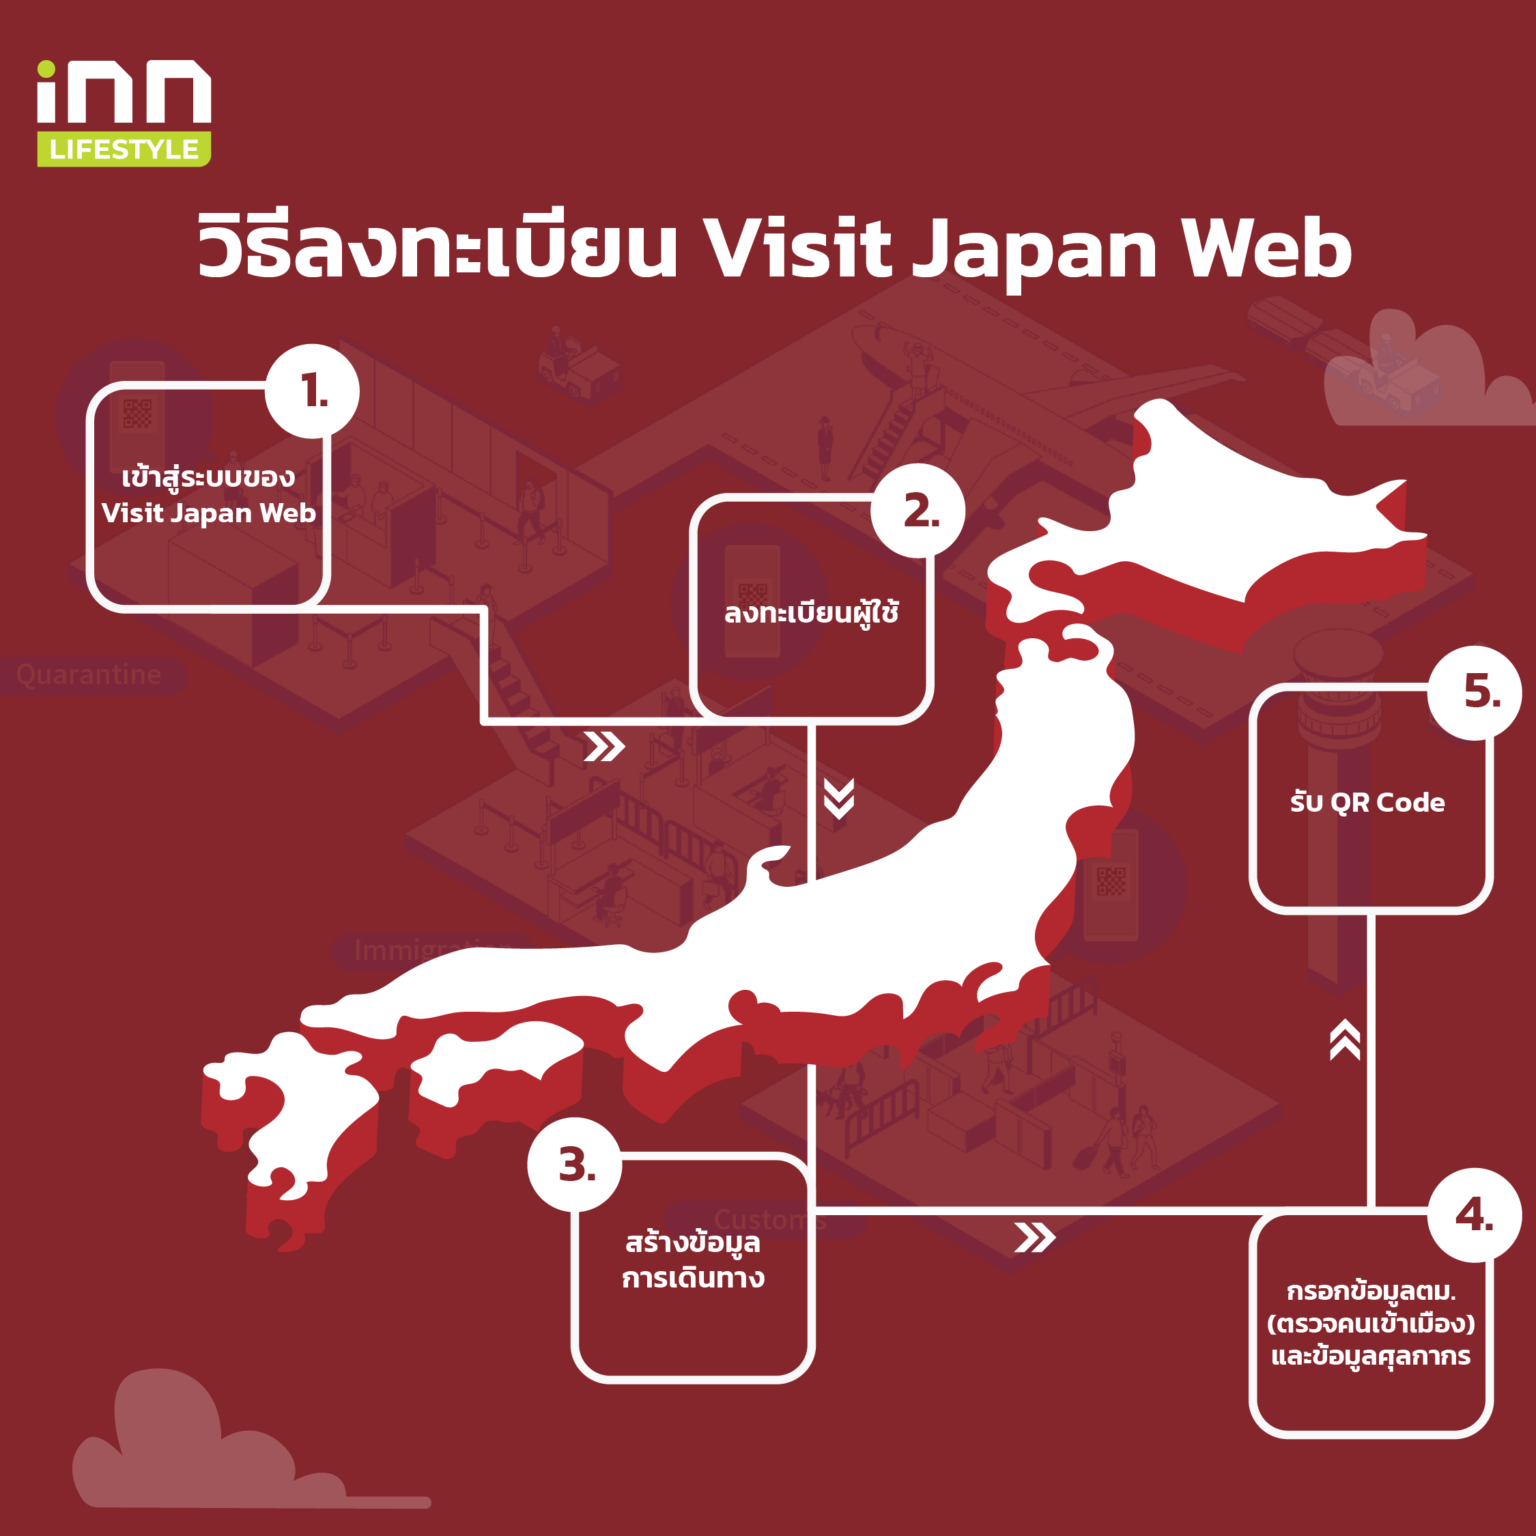  Ըŧ¹ Visit Japan Web